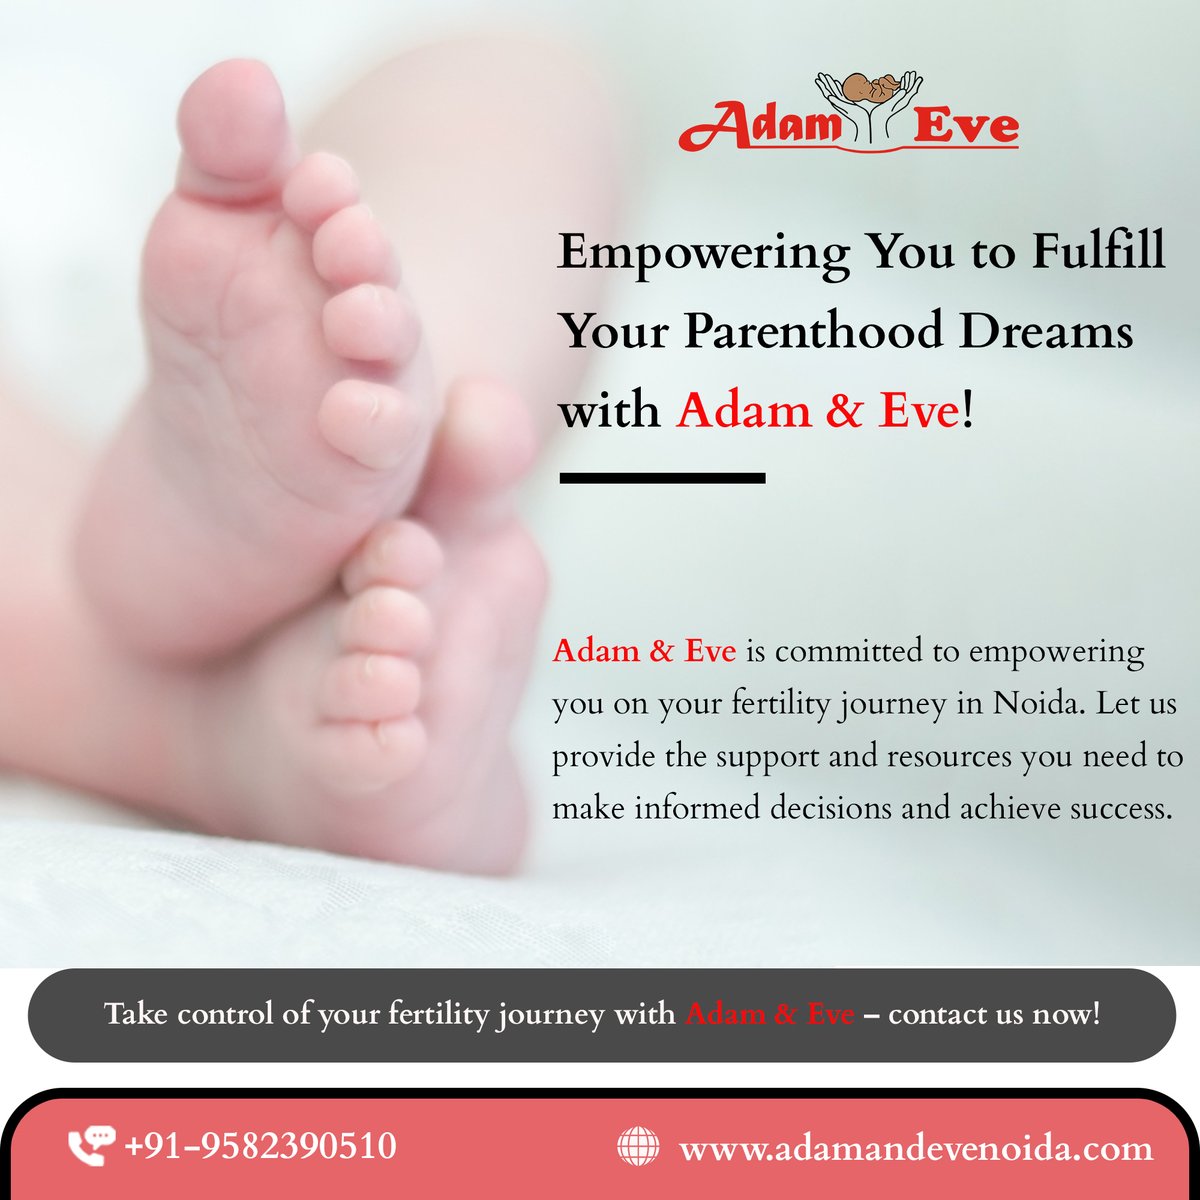 At Adam and Eve Noida, we understand the challenges of infertility. 
𝗕𝗼𝗼𝗸 𝗬𝗼𝘂𝗿 𝗙𝗶𝗿𝘀𝘁 𝗙𝗿𝗲𝗲 𝗔𝗽𝗽𝗼𝗶𝗻𝘁𝗺𝗲𝗻𝘁:
𝗖𝗮𝗹𝗹 +𝟵𝟭-𝟳𝟲𝟲𝟵𝟴𝟬𝟱𝟲𝟬𝟬 
#FertilityAwareness #HopeForFamilies #Noida #AdamAndEveNoida